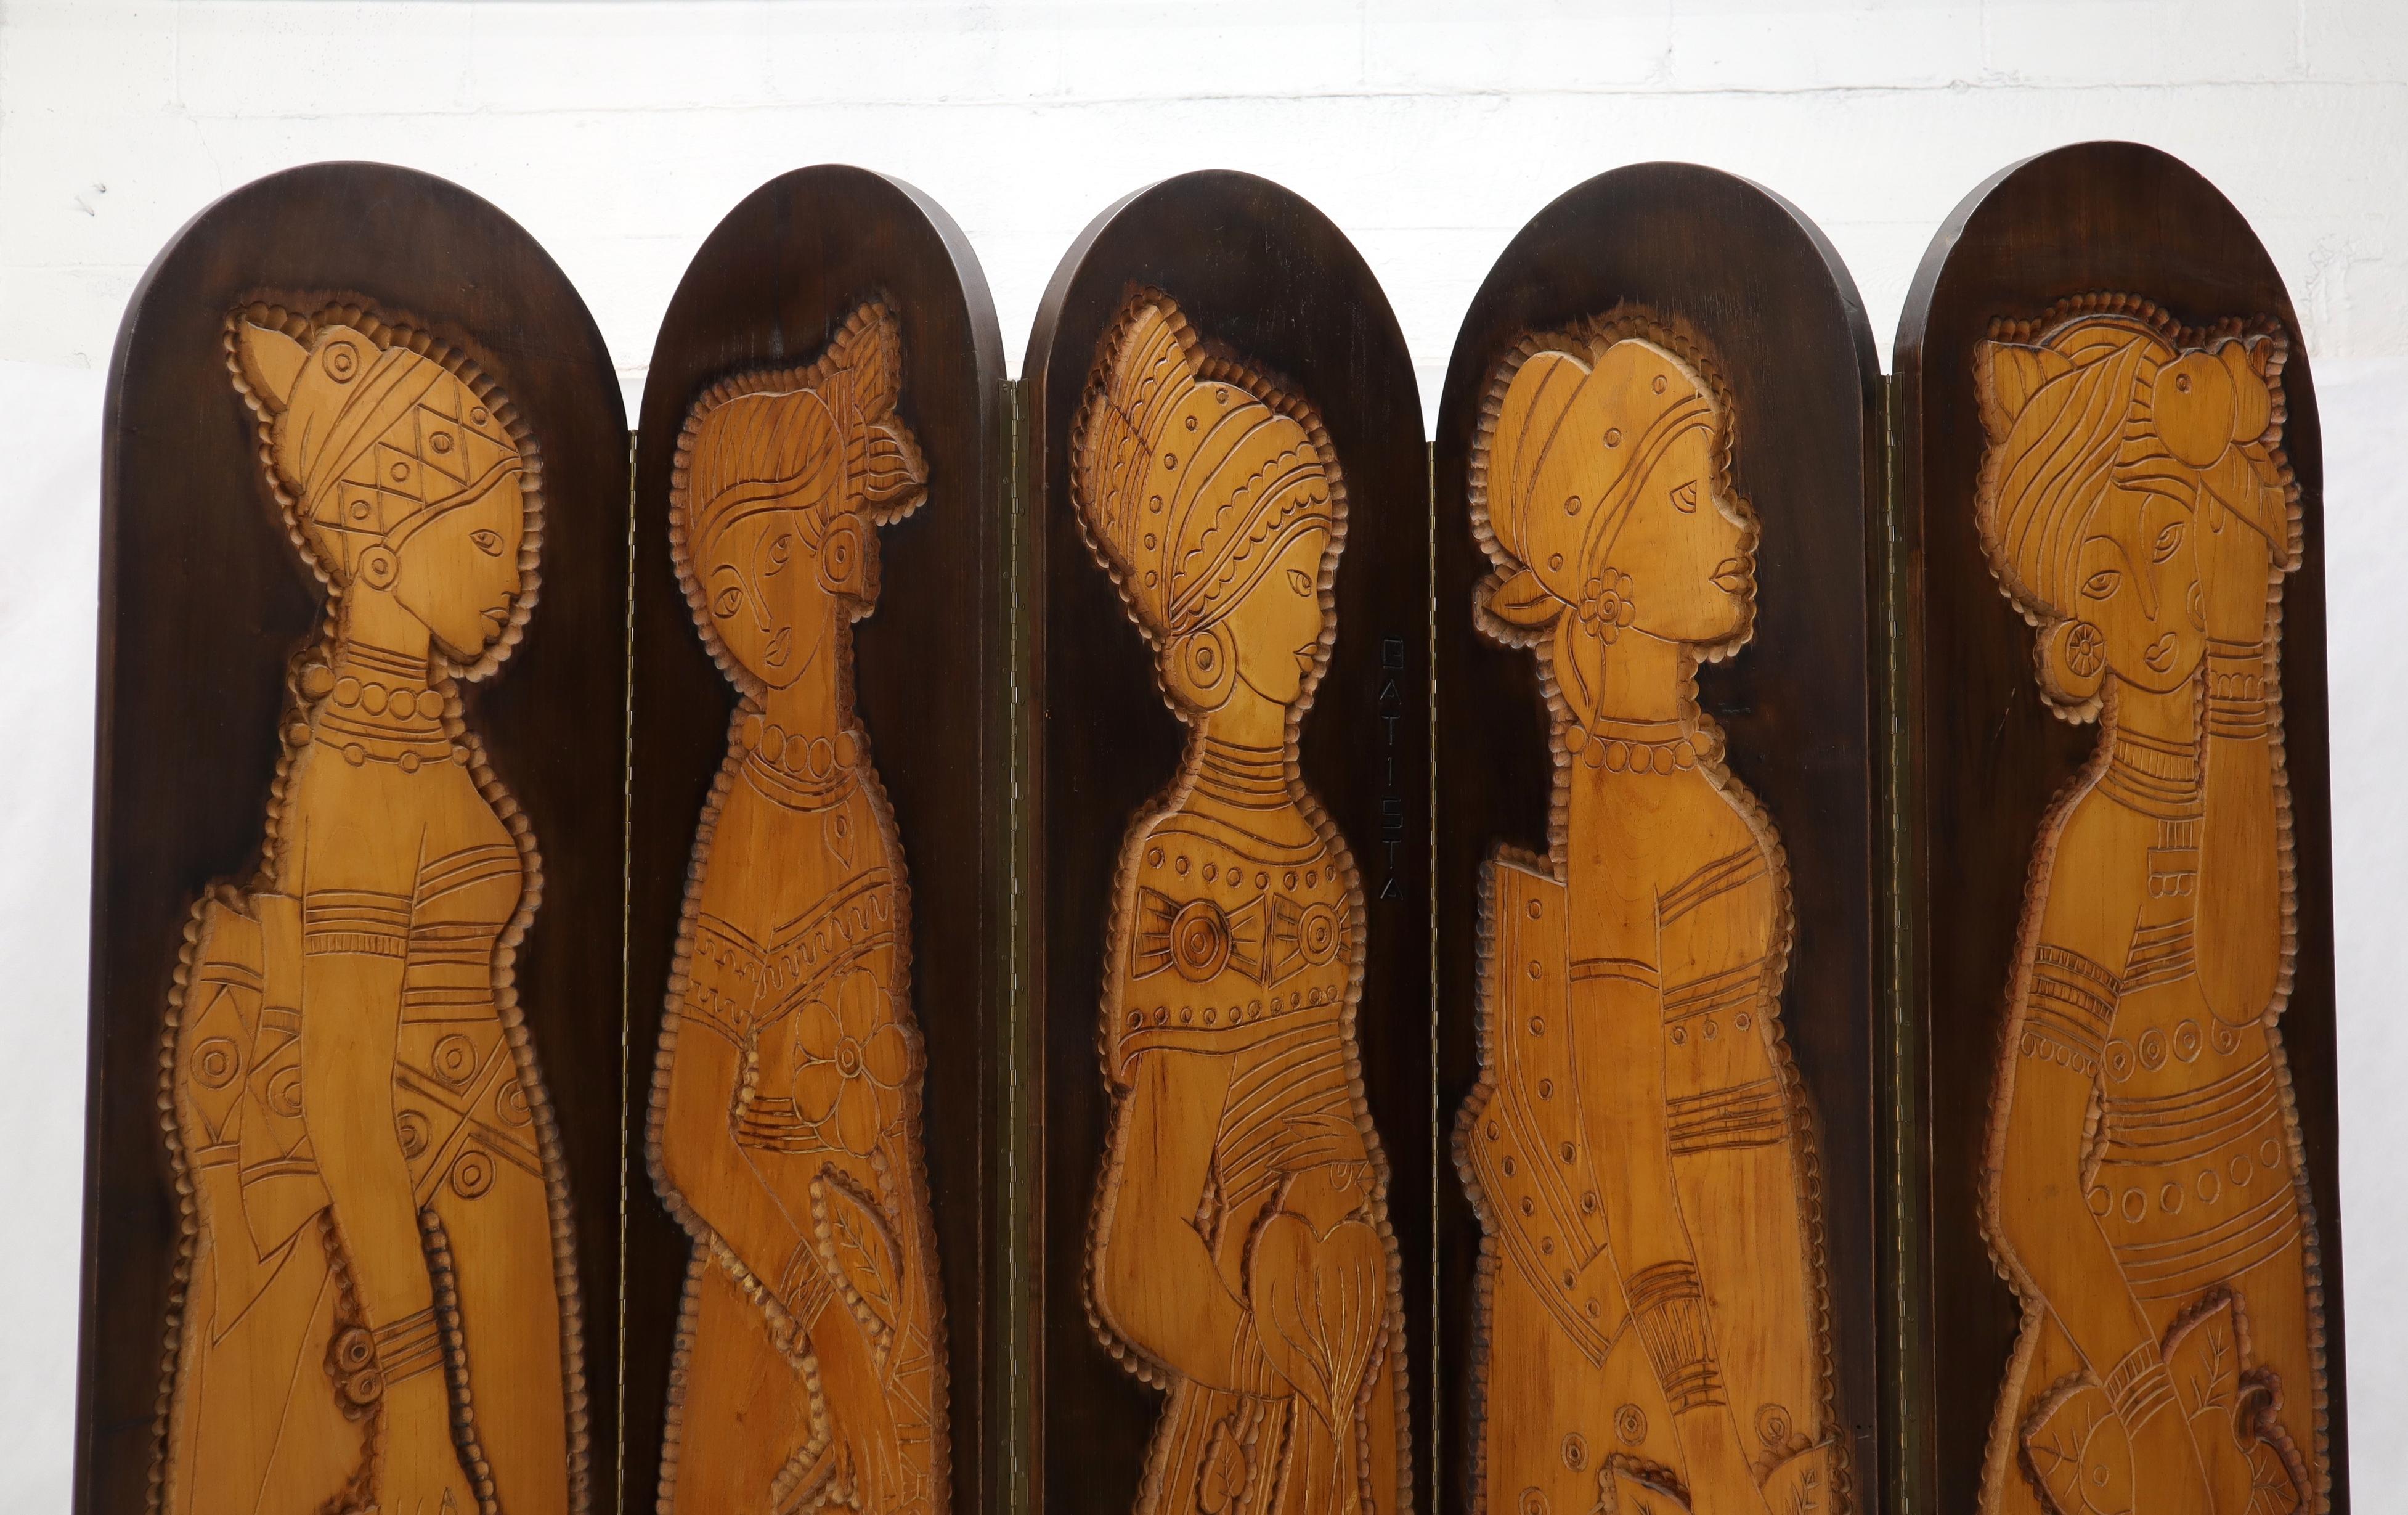 Impressionnant décor Arts & Crafts Mid-Century Modern diviseur de pièce en bois brûlé.